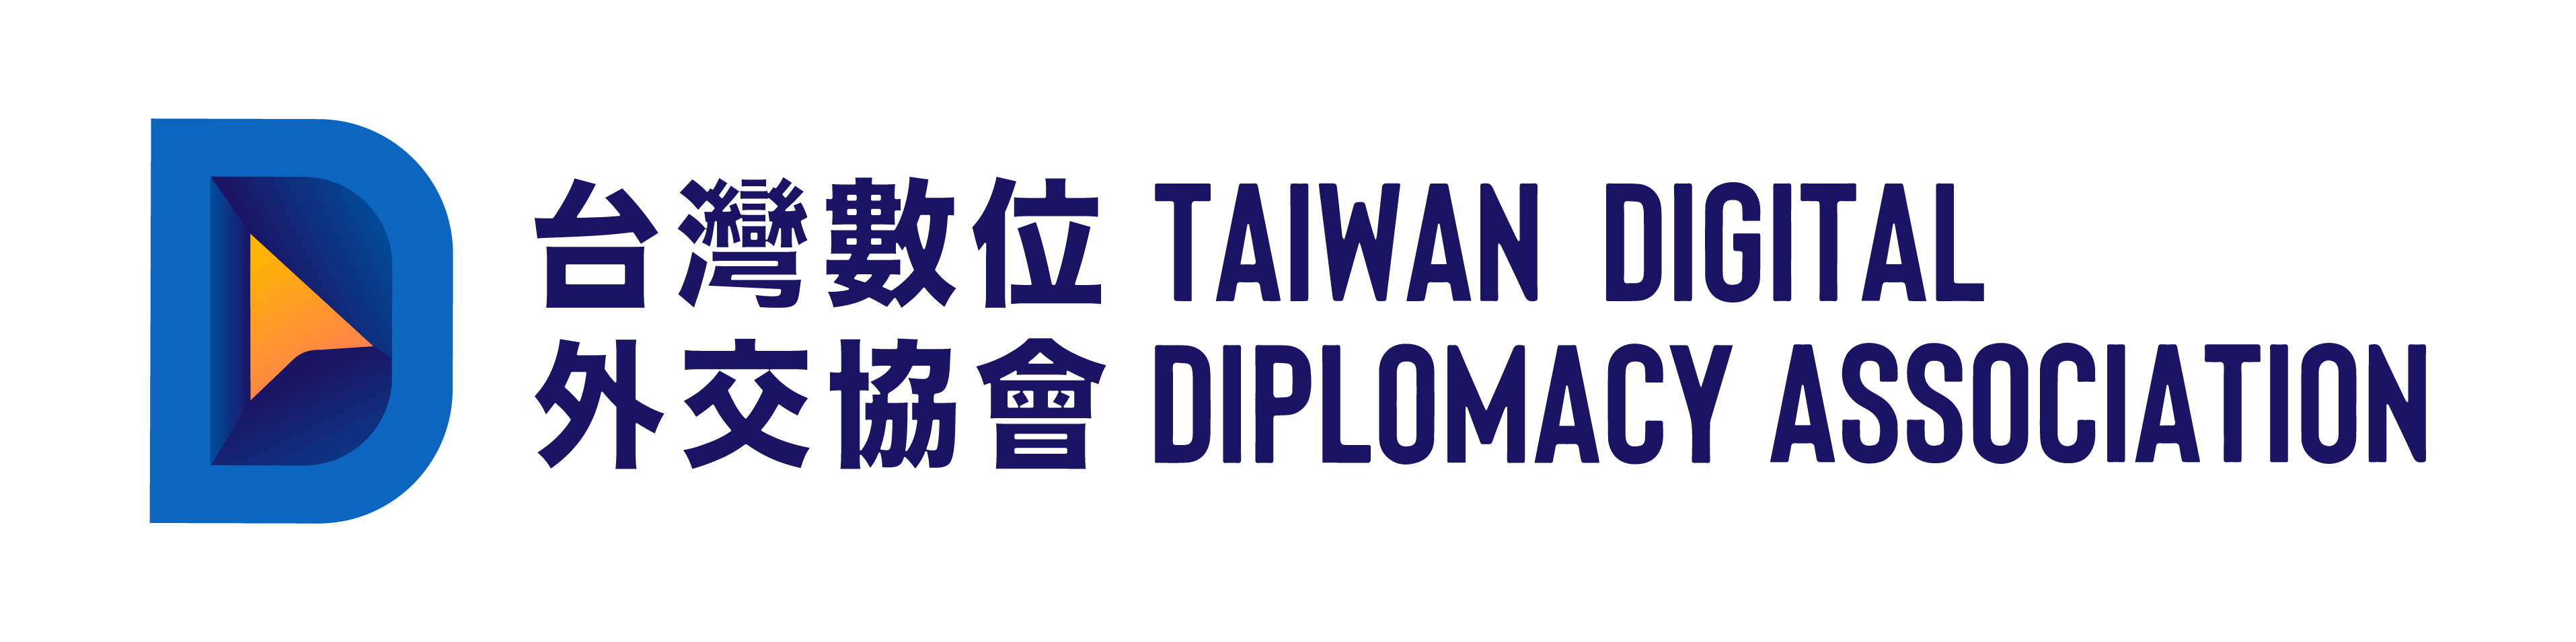 台灣數位外交協會 Taiwan Digital Diplomacy Association